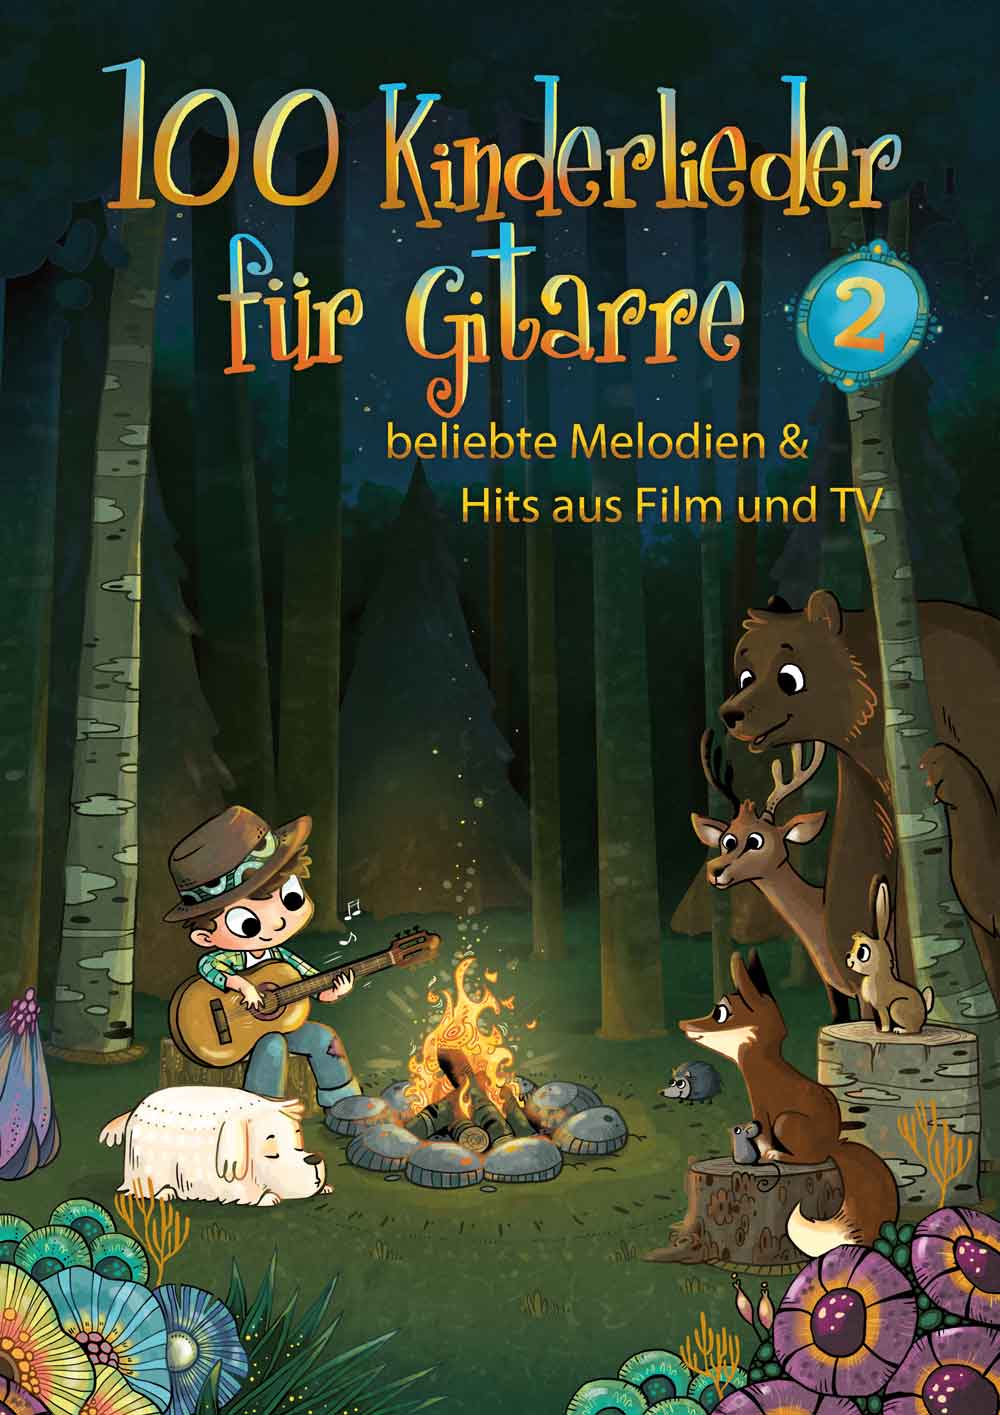 100 Kinderlieder für Gitarre 2 - beliebte Melodien & Hits aus Film und TV - BOE 7963